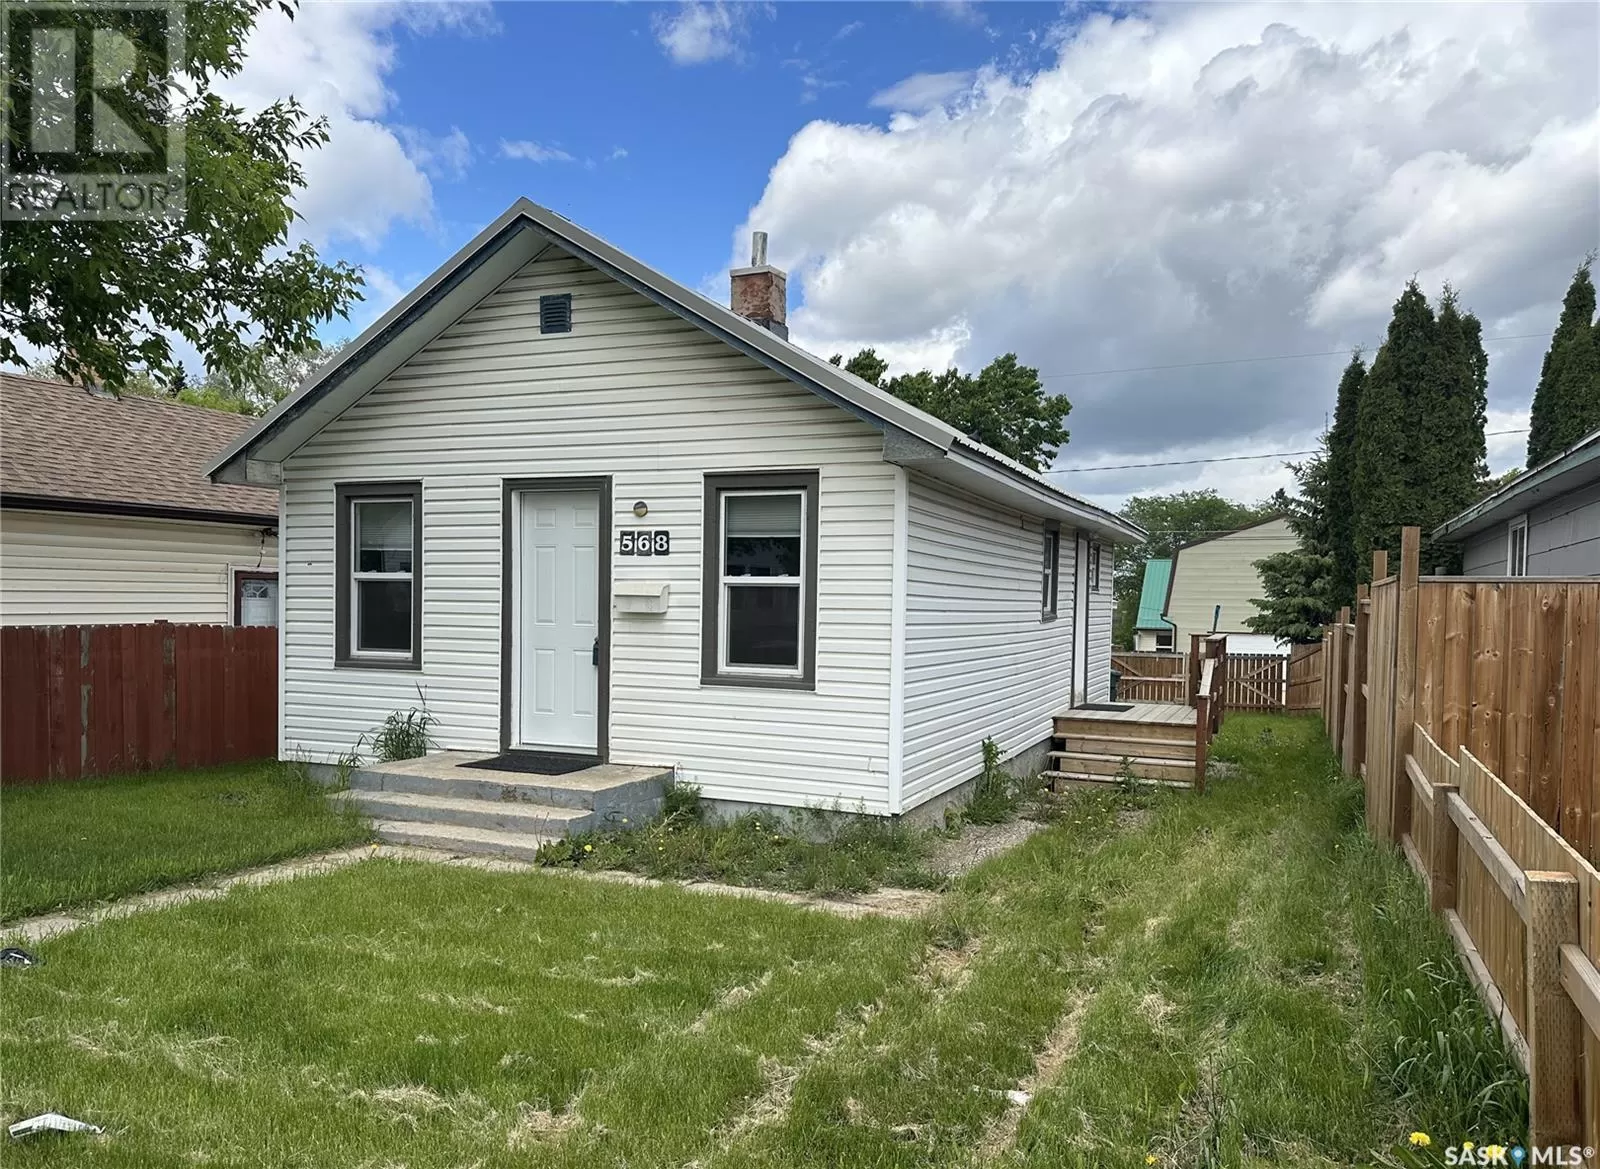 House for rent: 568 21st Street E, Prince Albert, Saskatchewan S6V 1M7